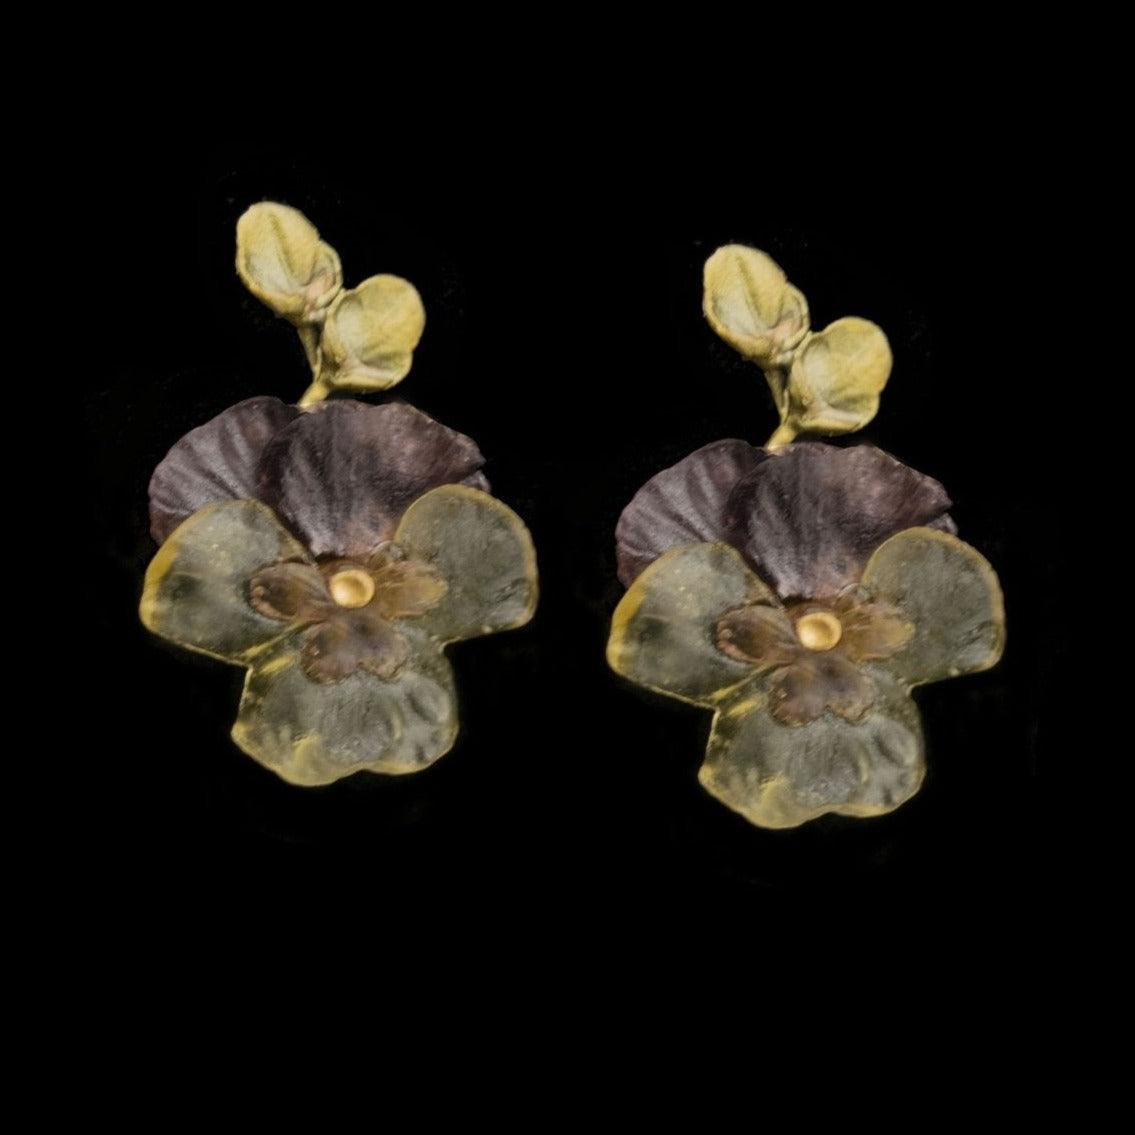 Pansies Earrings - Large Post - Michael Michaud Jewellery